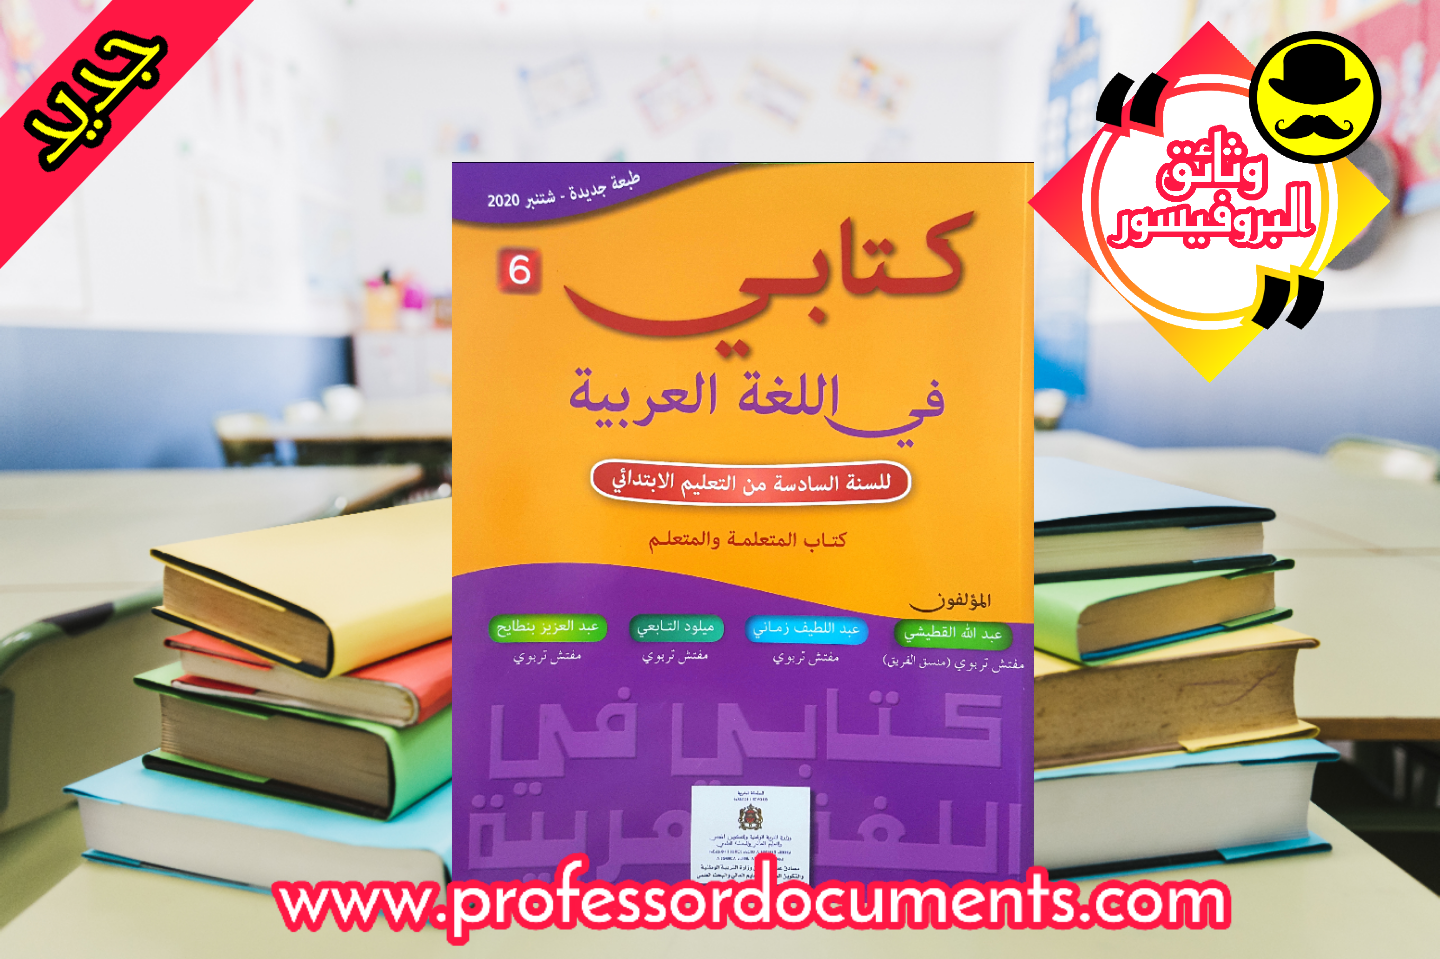 كتاب المتعلم - كتابي في اللغة العربية - المستوى السادس ابتدائي - طبعة 2020 تجدونه حصريا على موقعنا الرسمي وثائق البروفيسور